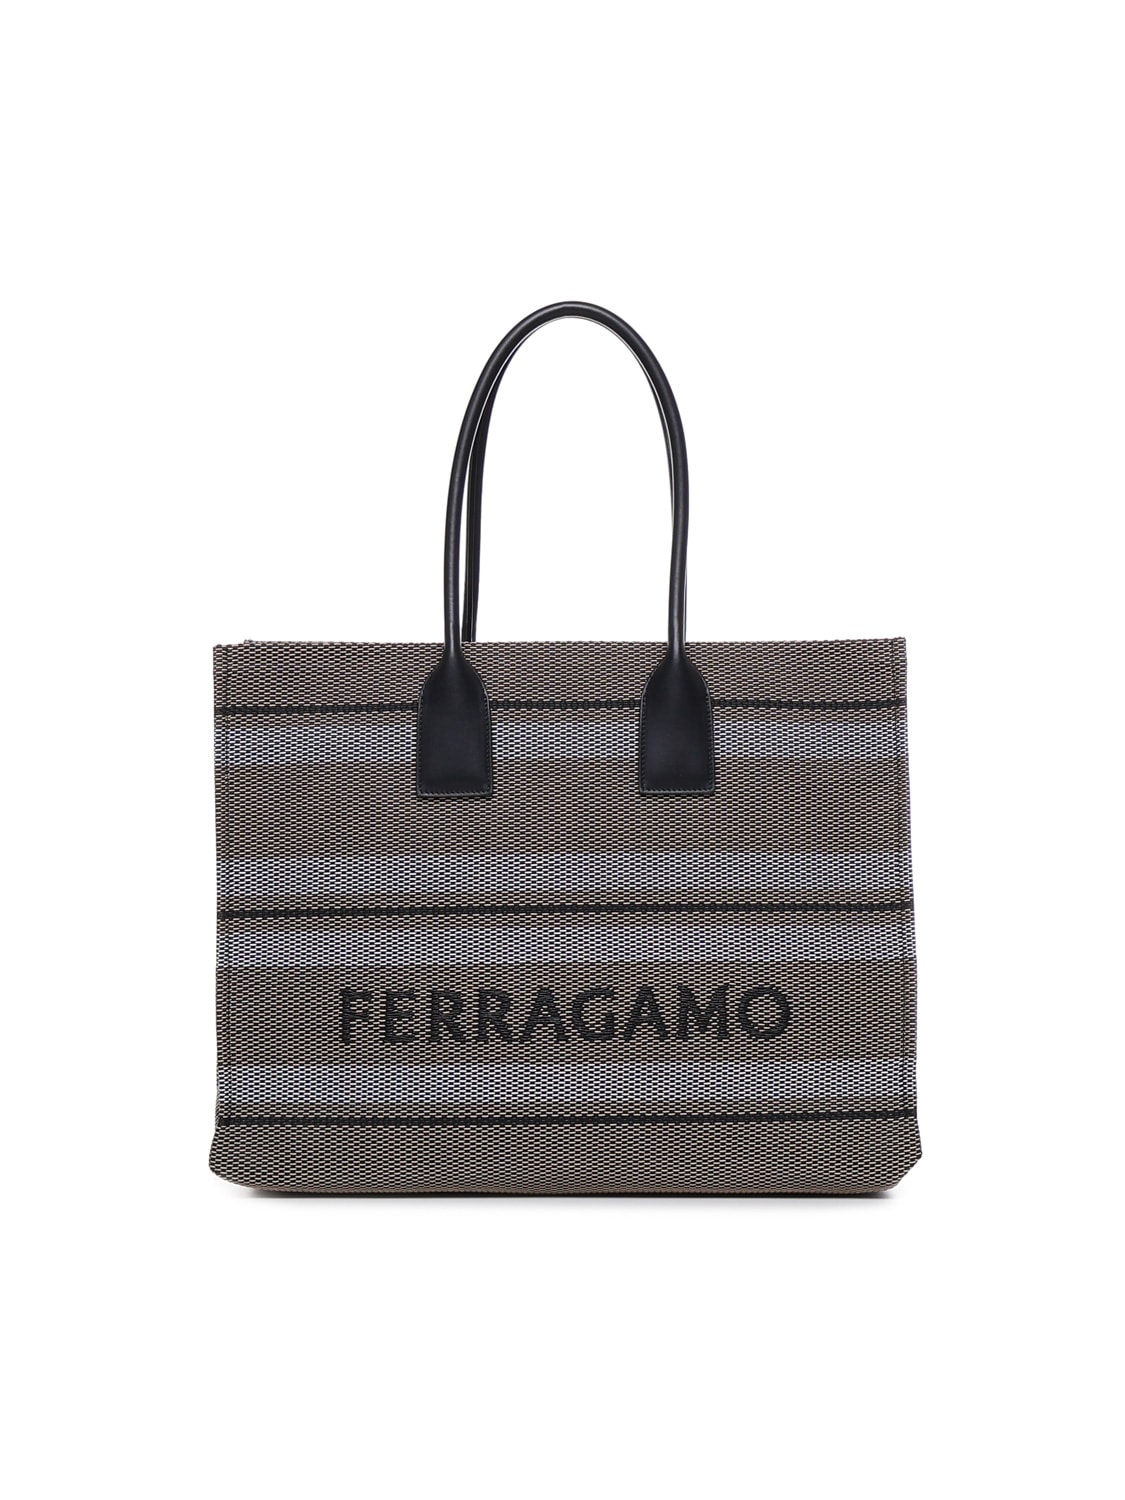 FERRAGAMO STRIPED TOTE BAG WITH LOGO